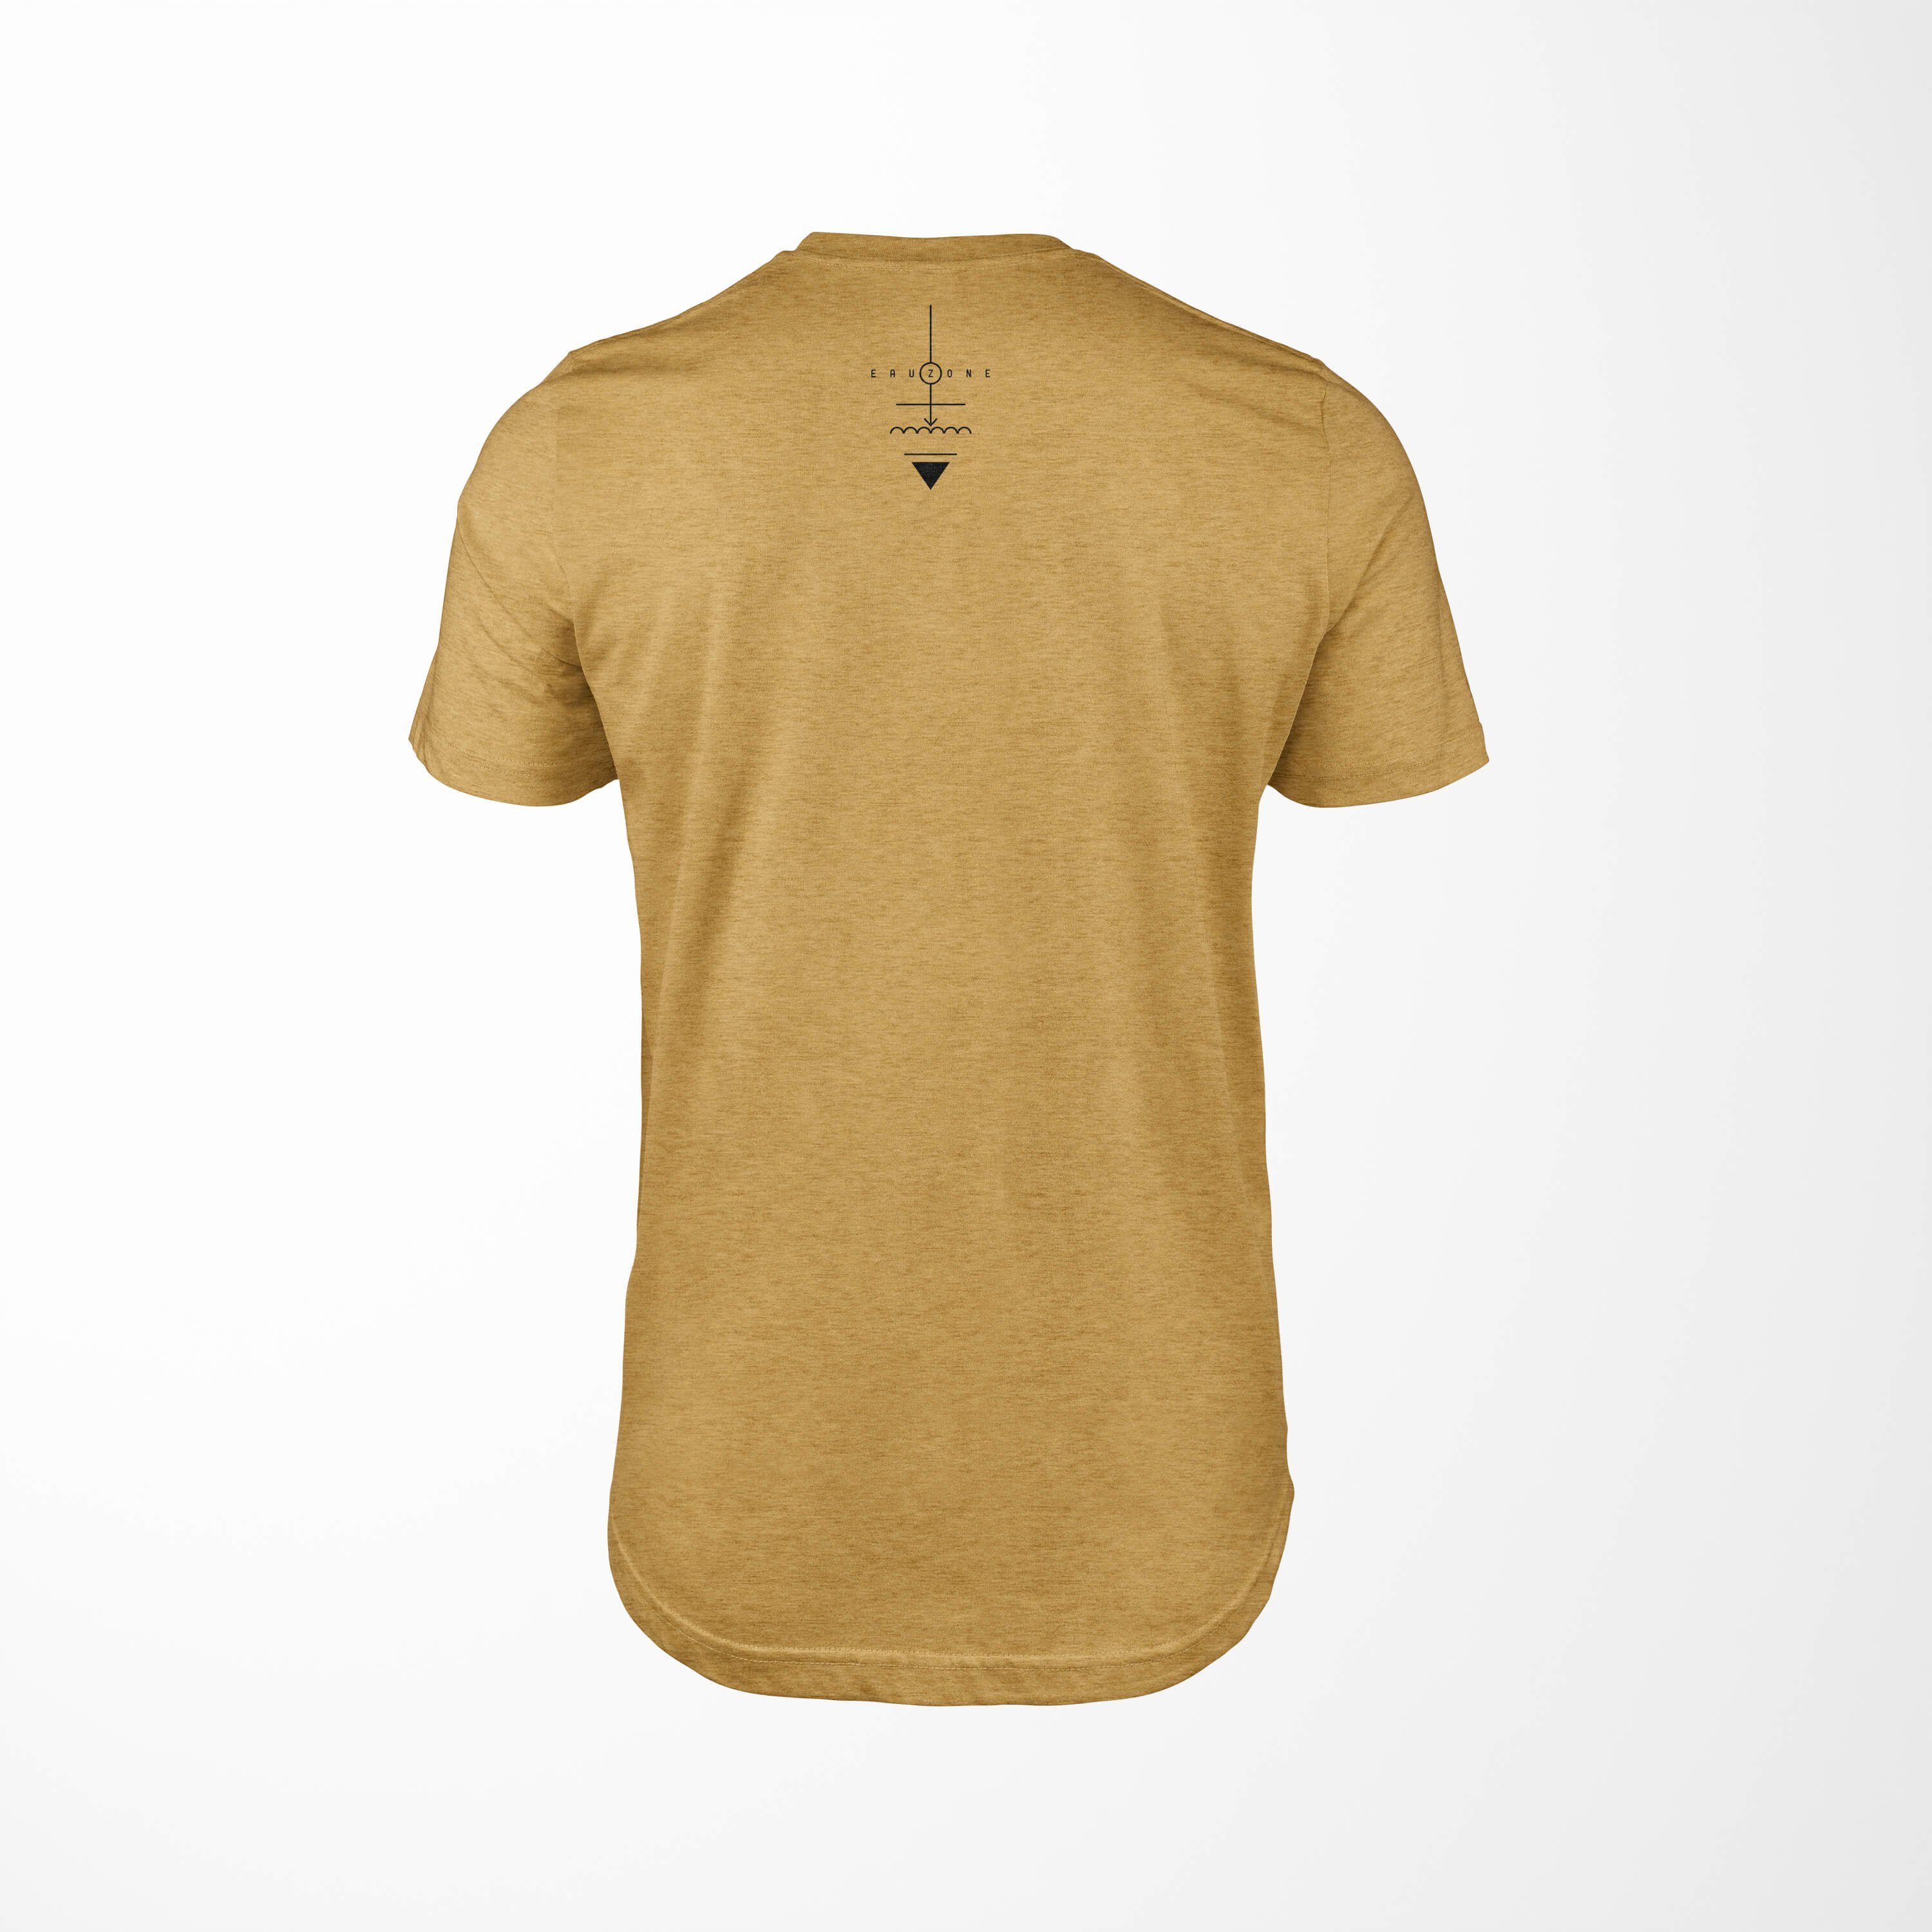 Serie Symbole Tragekomfort feine angenehmer Antique No.0032 Struktur Premium Gold T-Shirt T-Shirt Alchemy Sinus Art